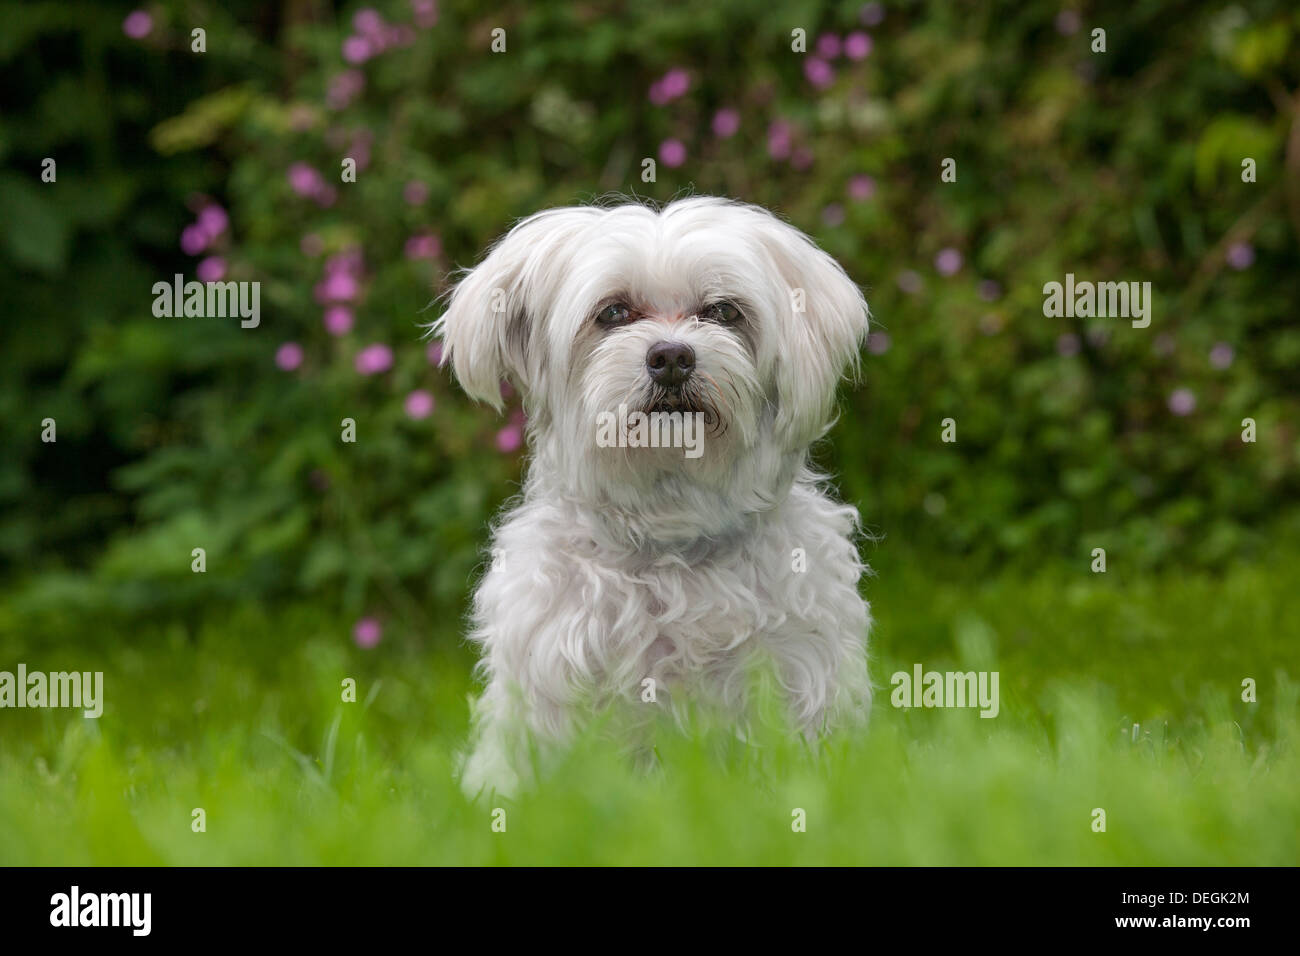 Retrato del maltés / Maltezer perro (Canis lupus familiaris) sentados en el jardín Foto de stock